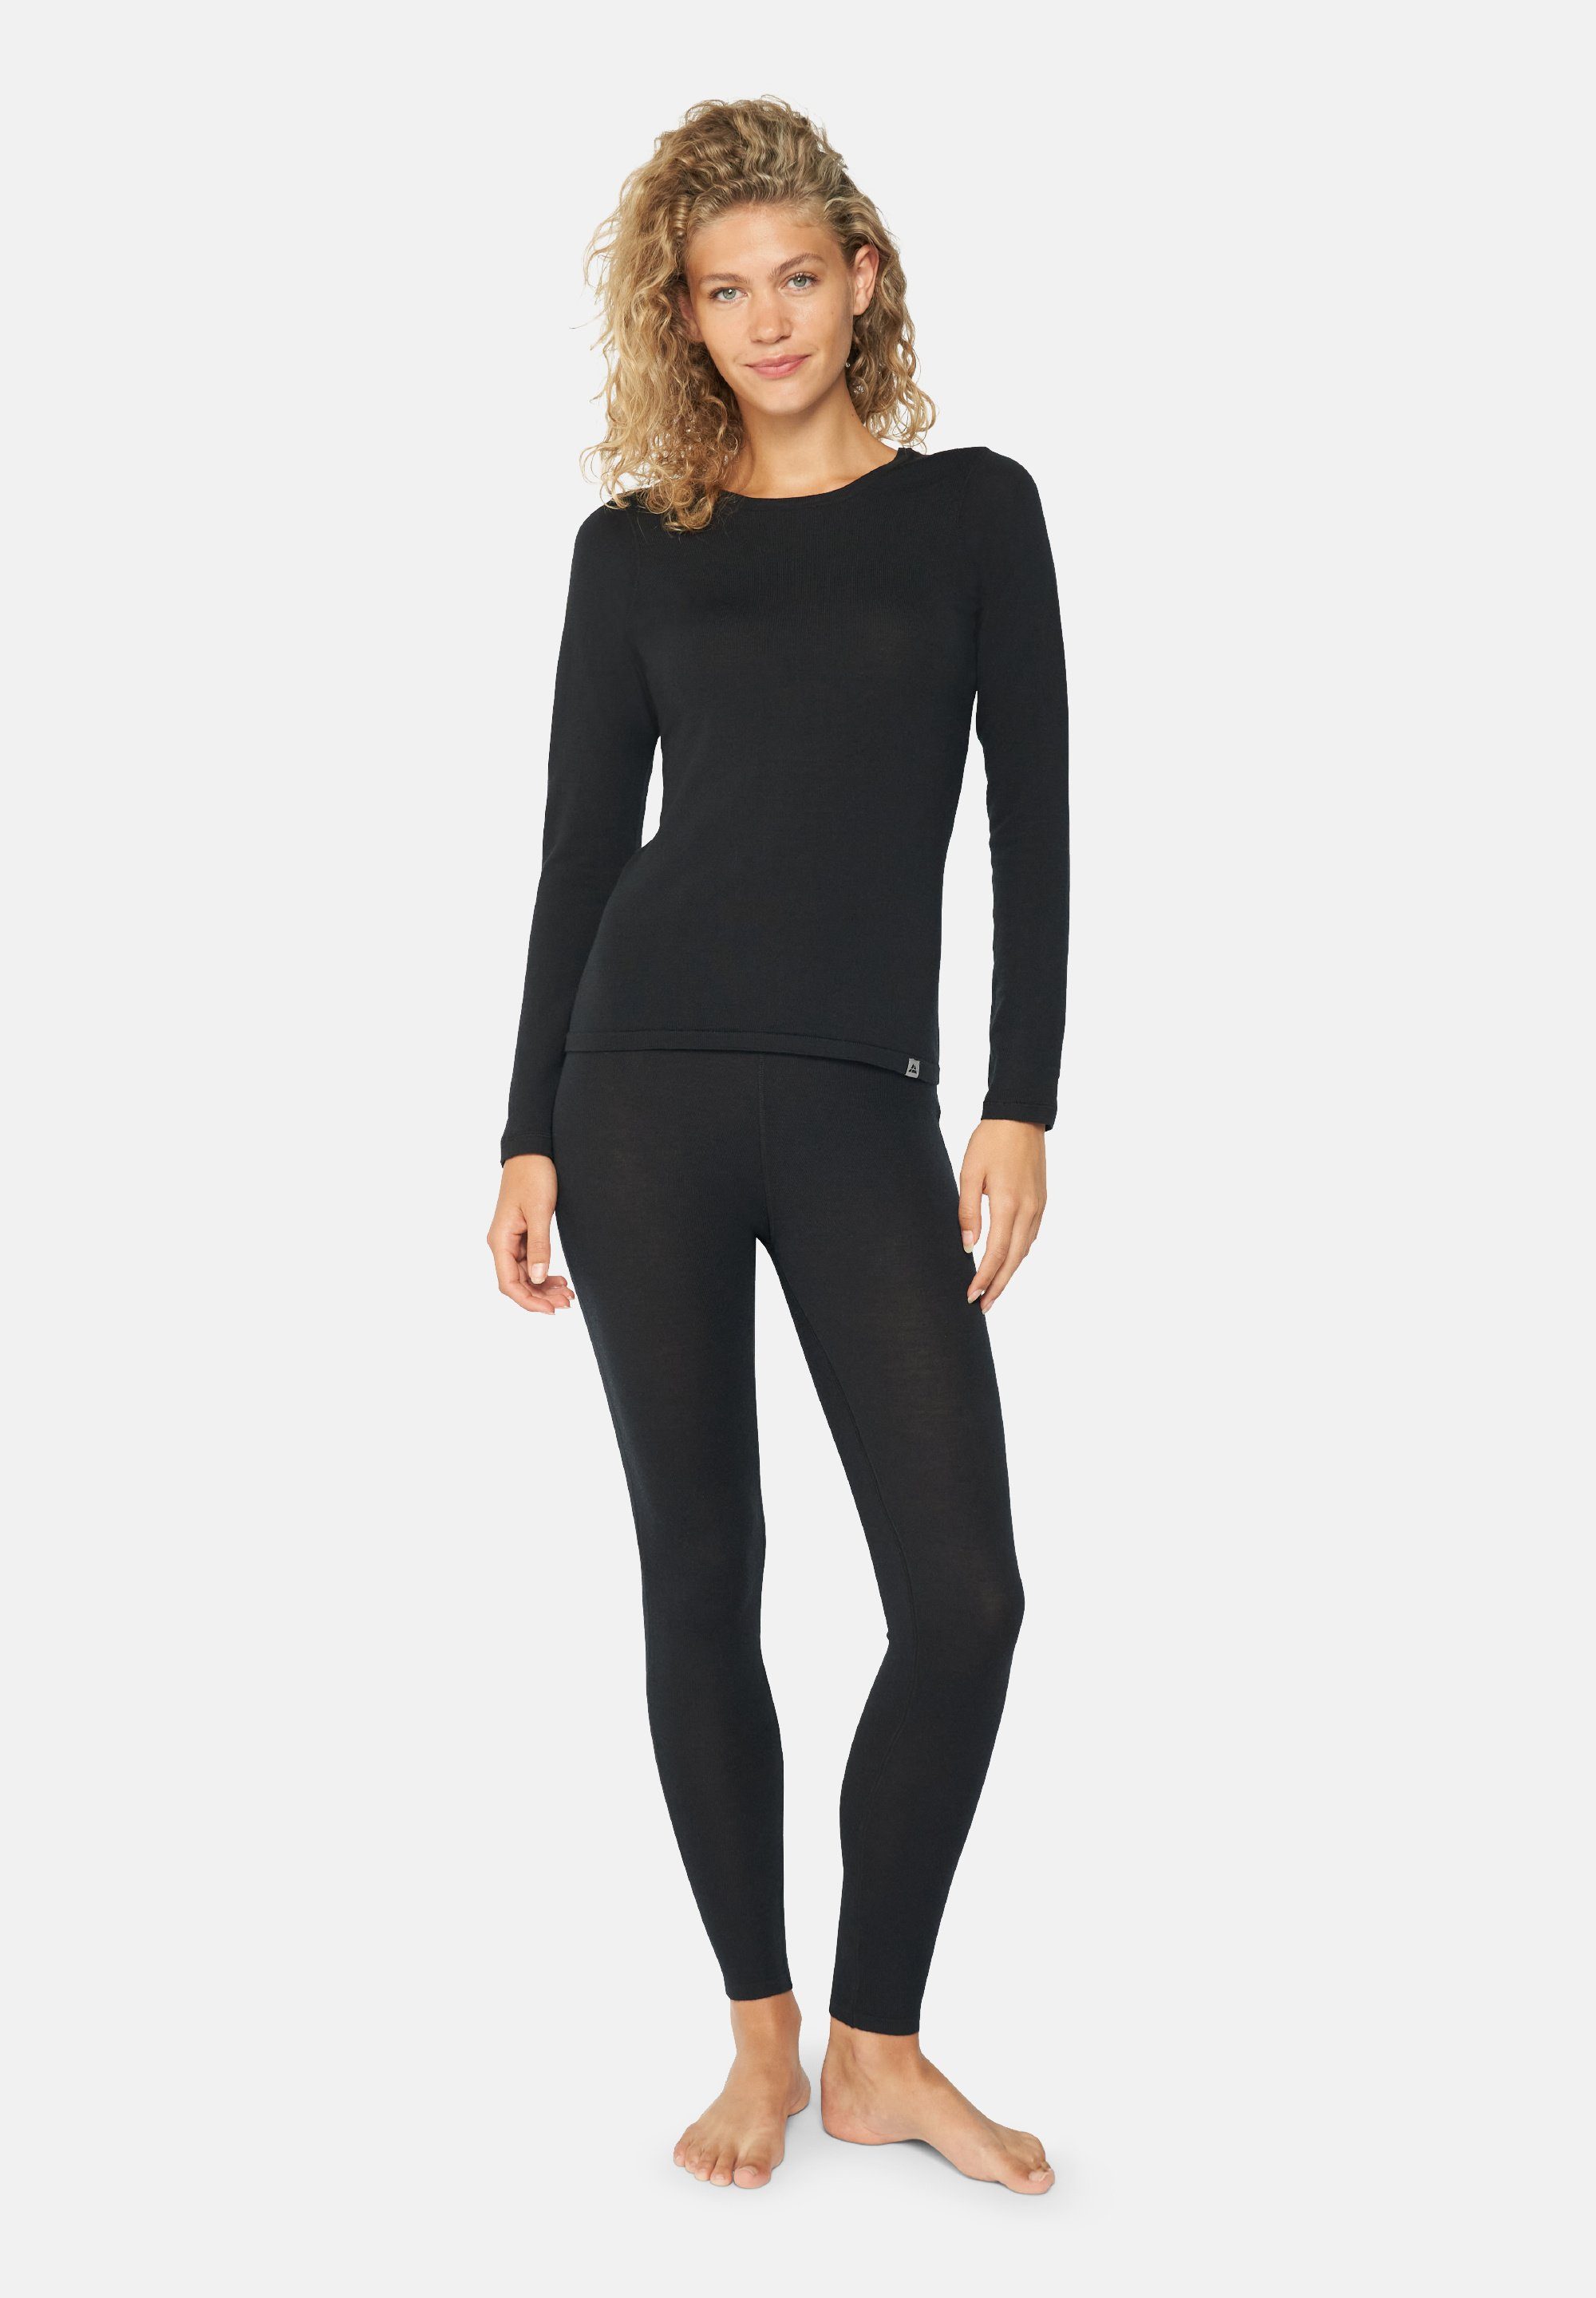 DANISH ENDURANCE Thermounterhemd Merino Thermo-Unterwäsche Set für Damen Langarm Shirt & Hose, Temperaturregulierend schwarz